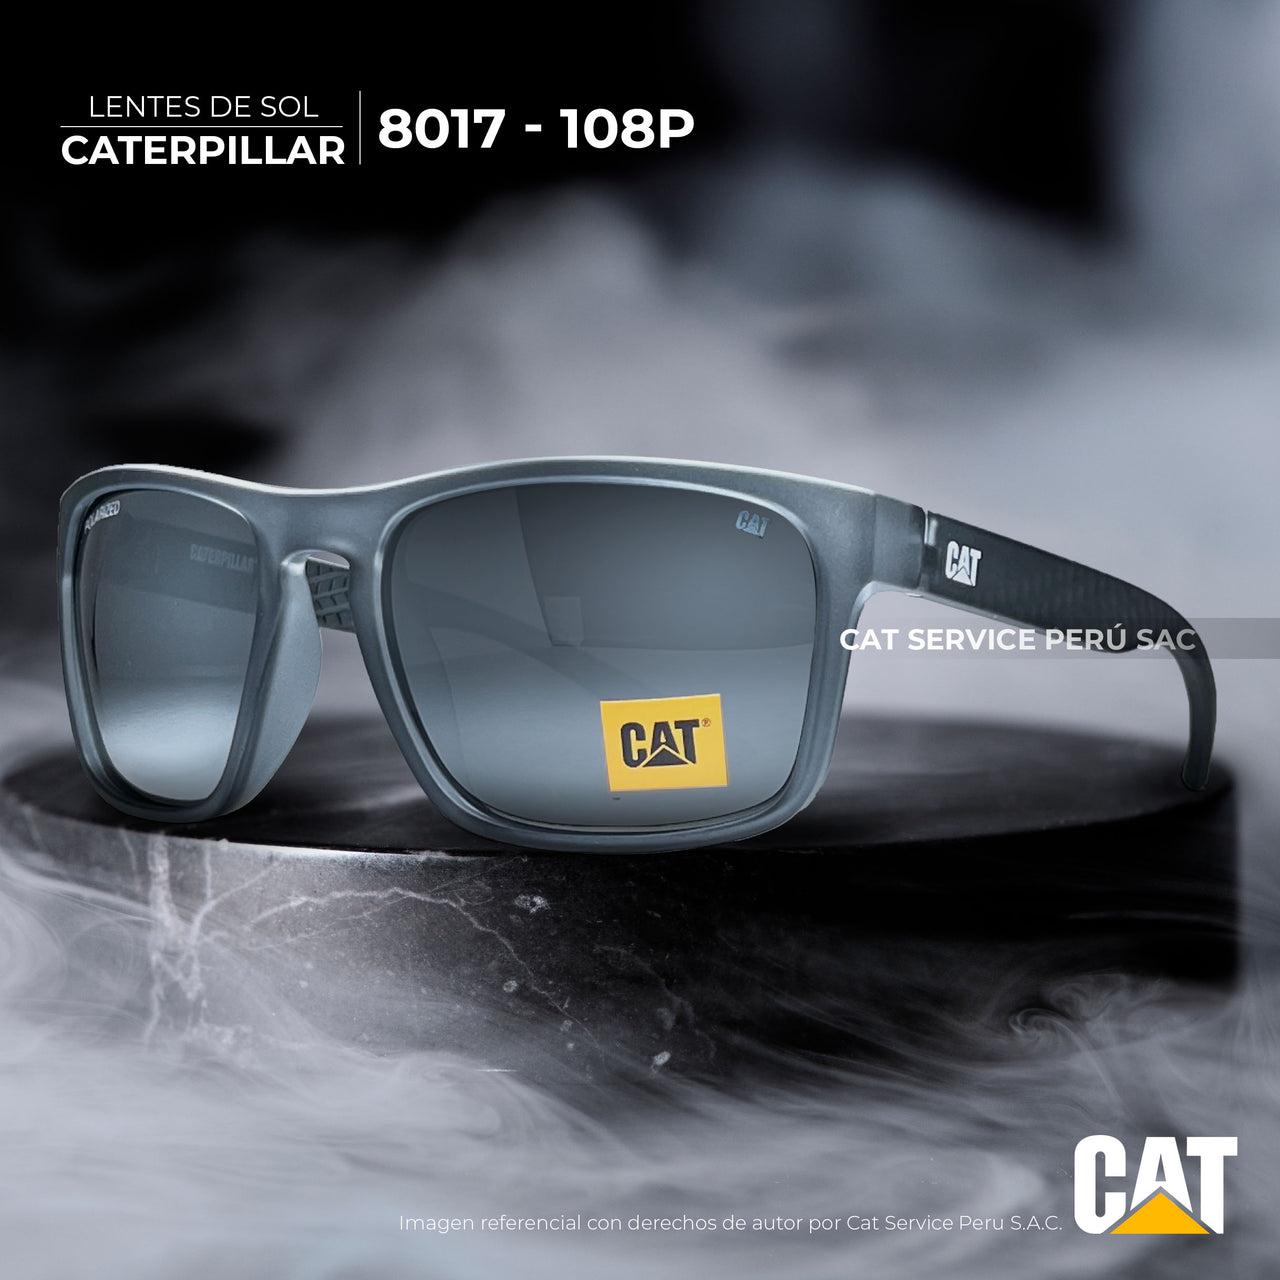 Cat CTS-8017-108P Polarized Gray Moons Sunglasses 